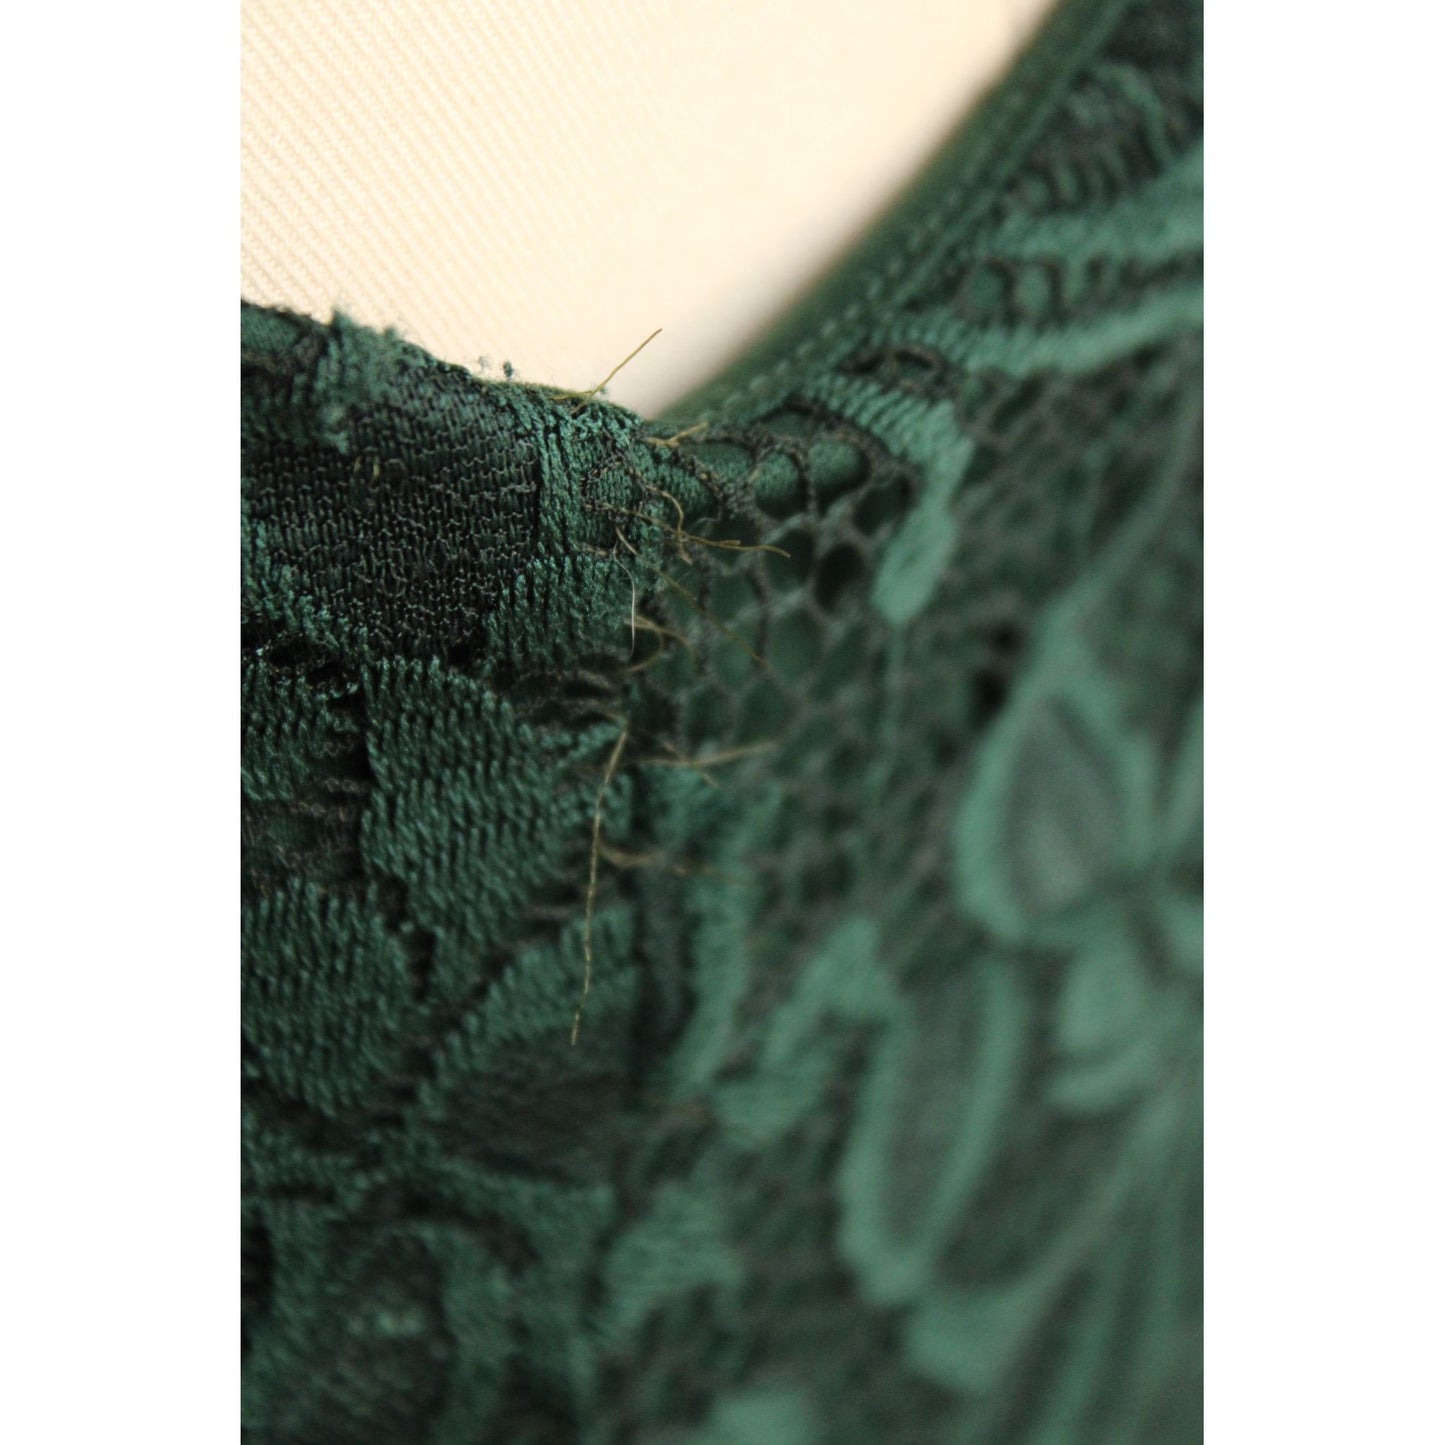 Aonour Green Lace Womens Dress, Size X